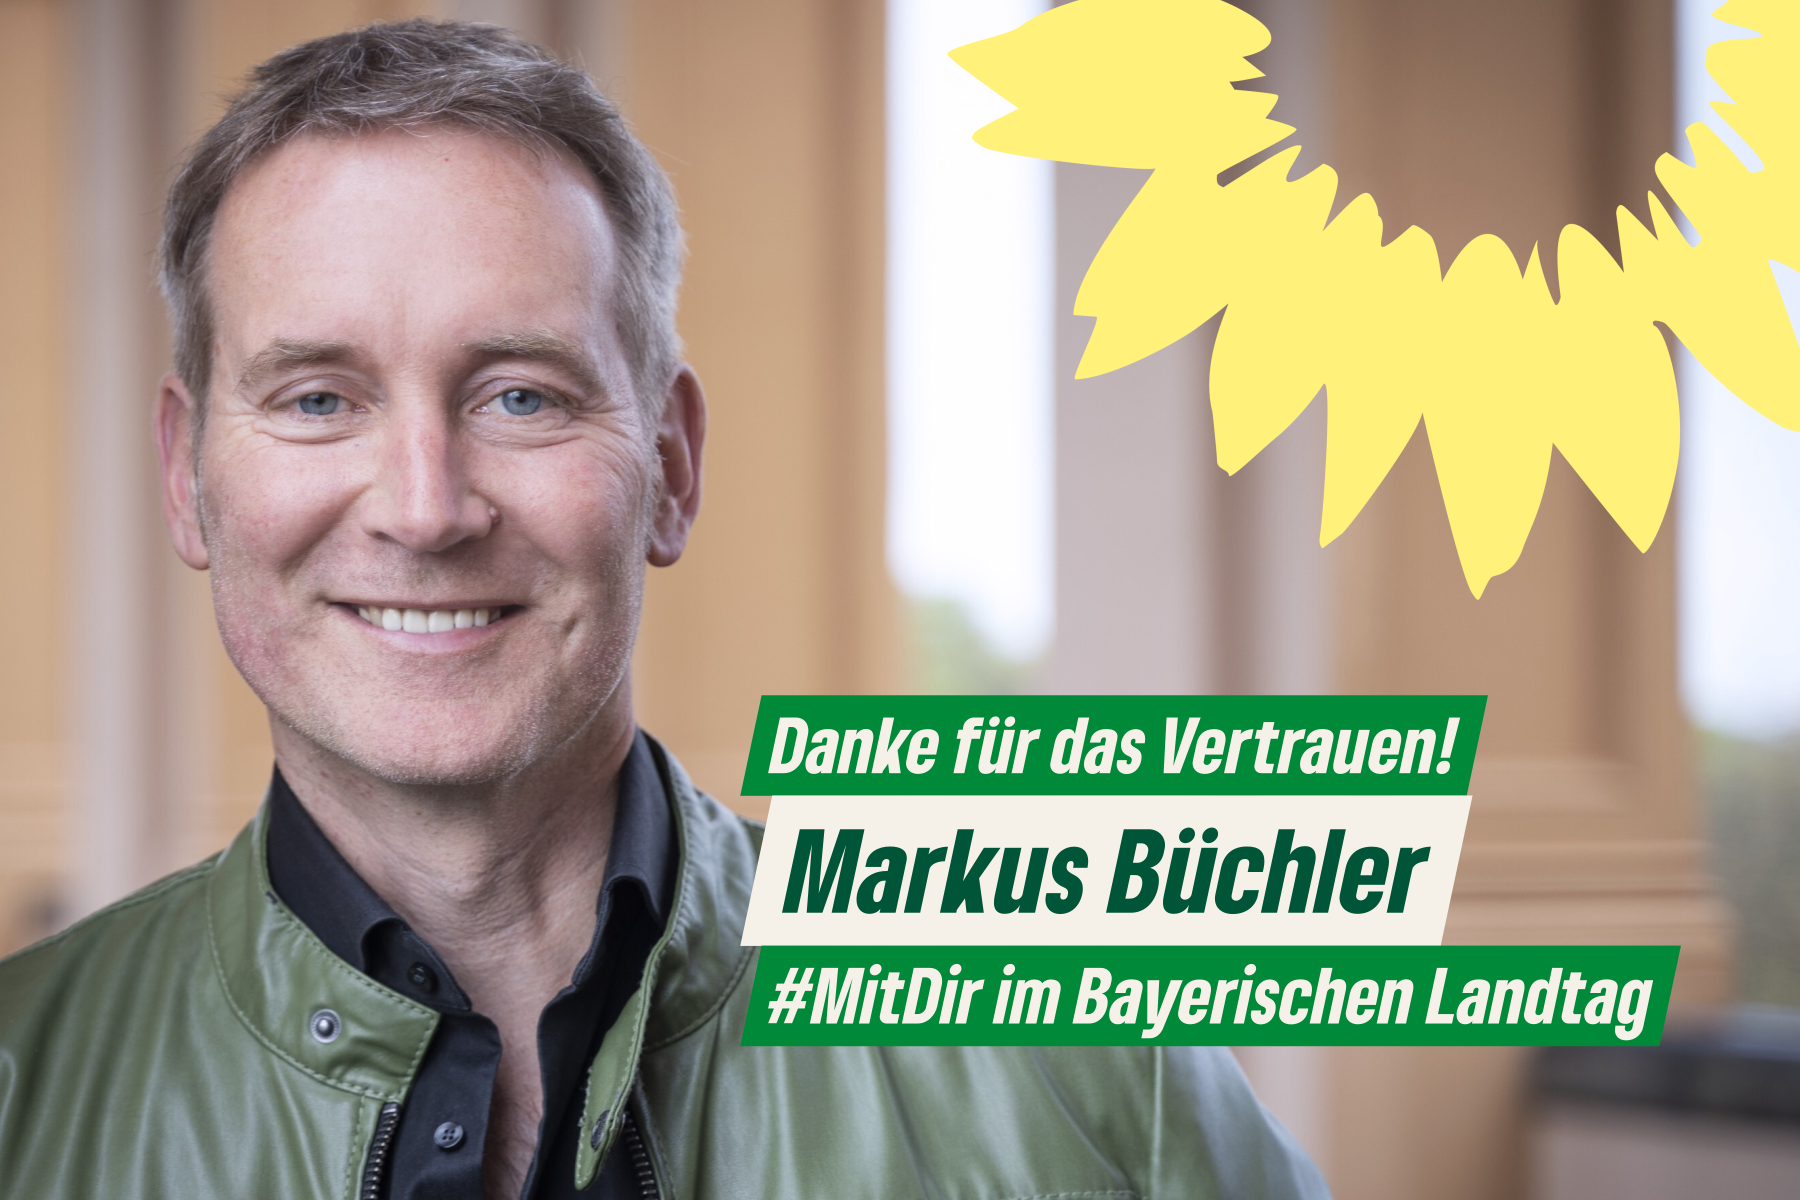 Portrait Markus Büchler mit freudigem Gesichtsausdruck auf den Landtagsarkaden und Schriftzug: "Danke für das Vertrauen! Markus Büchler #MitDir im Bayerischen Landtag"